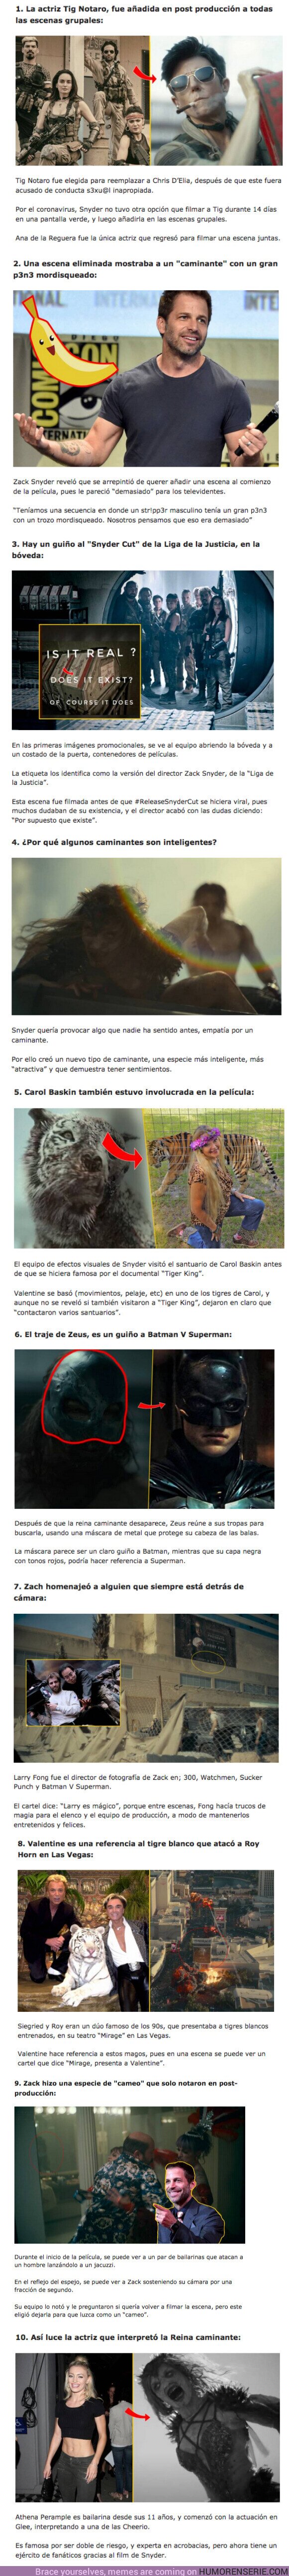 74330 - GALERÍA: 10 Curiosidades sin spoilers sobre “Army of the Dead” de Zack Snyder